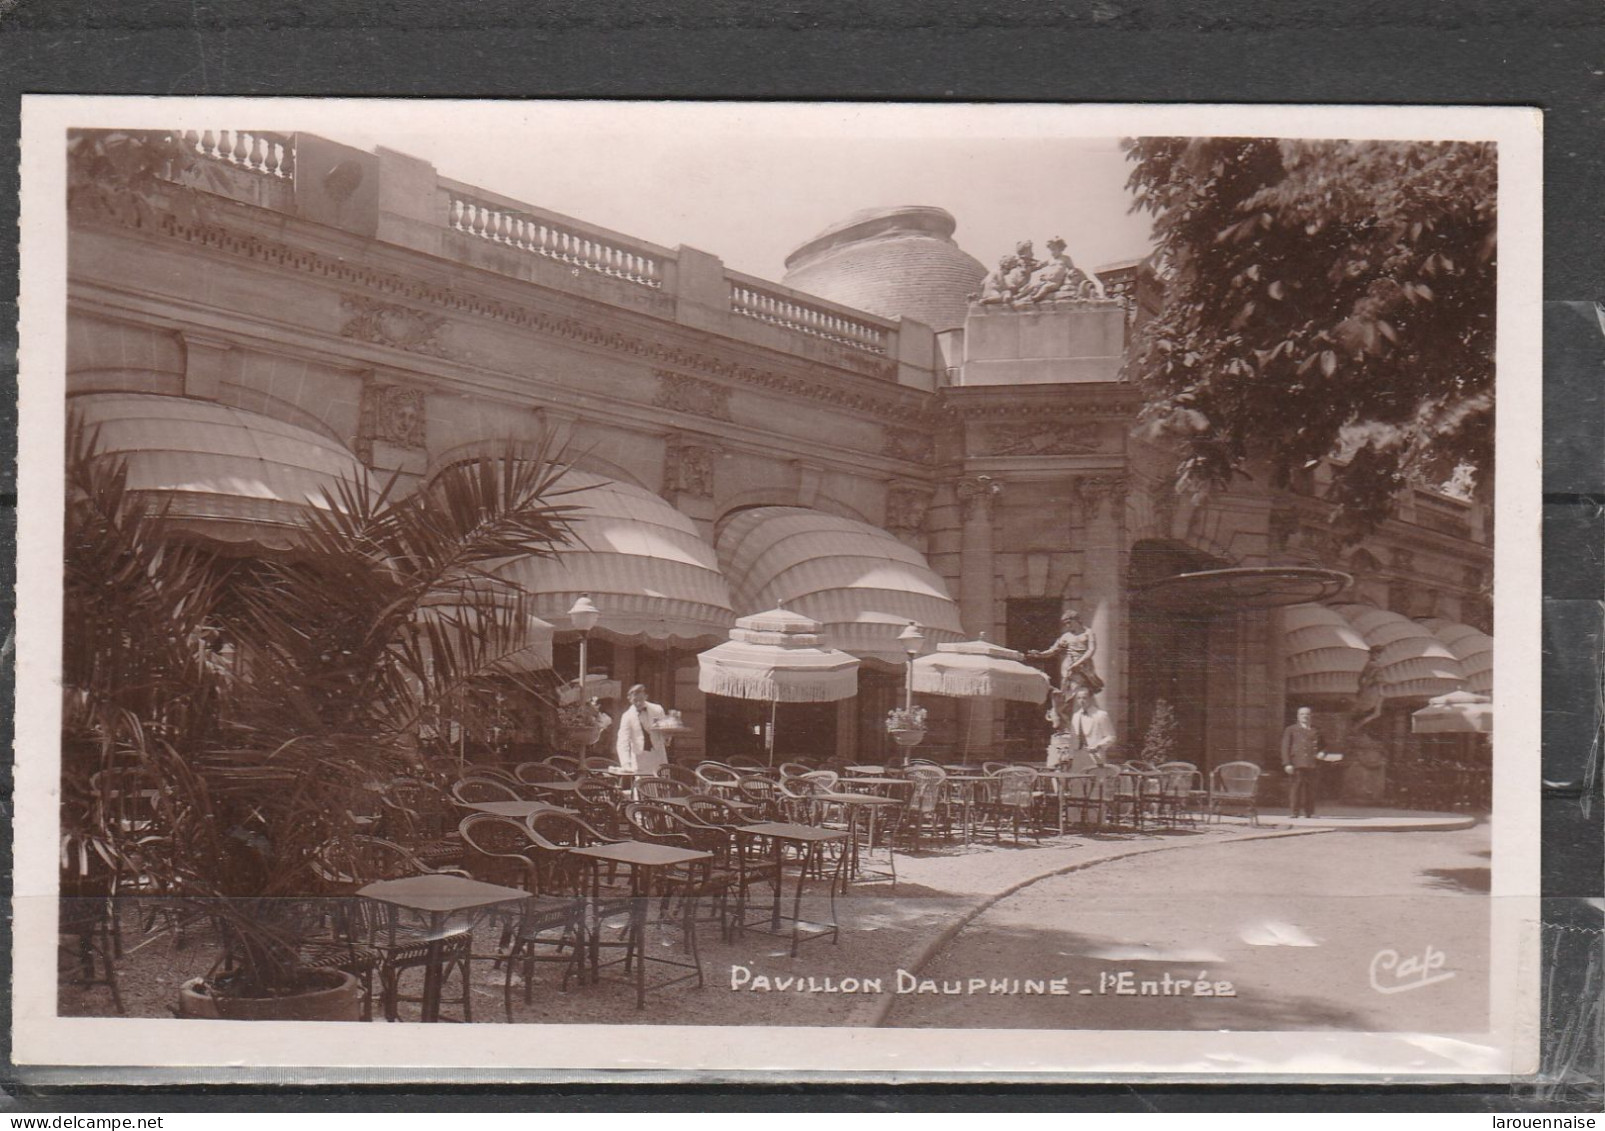 75016 - PARIS - Pavillon Dauphine - L' Entrée - Cafés, Hoteles, Restaurantes